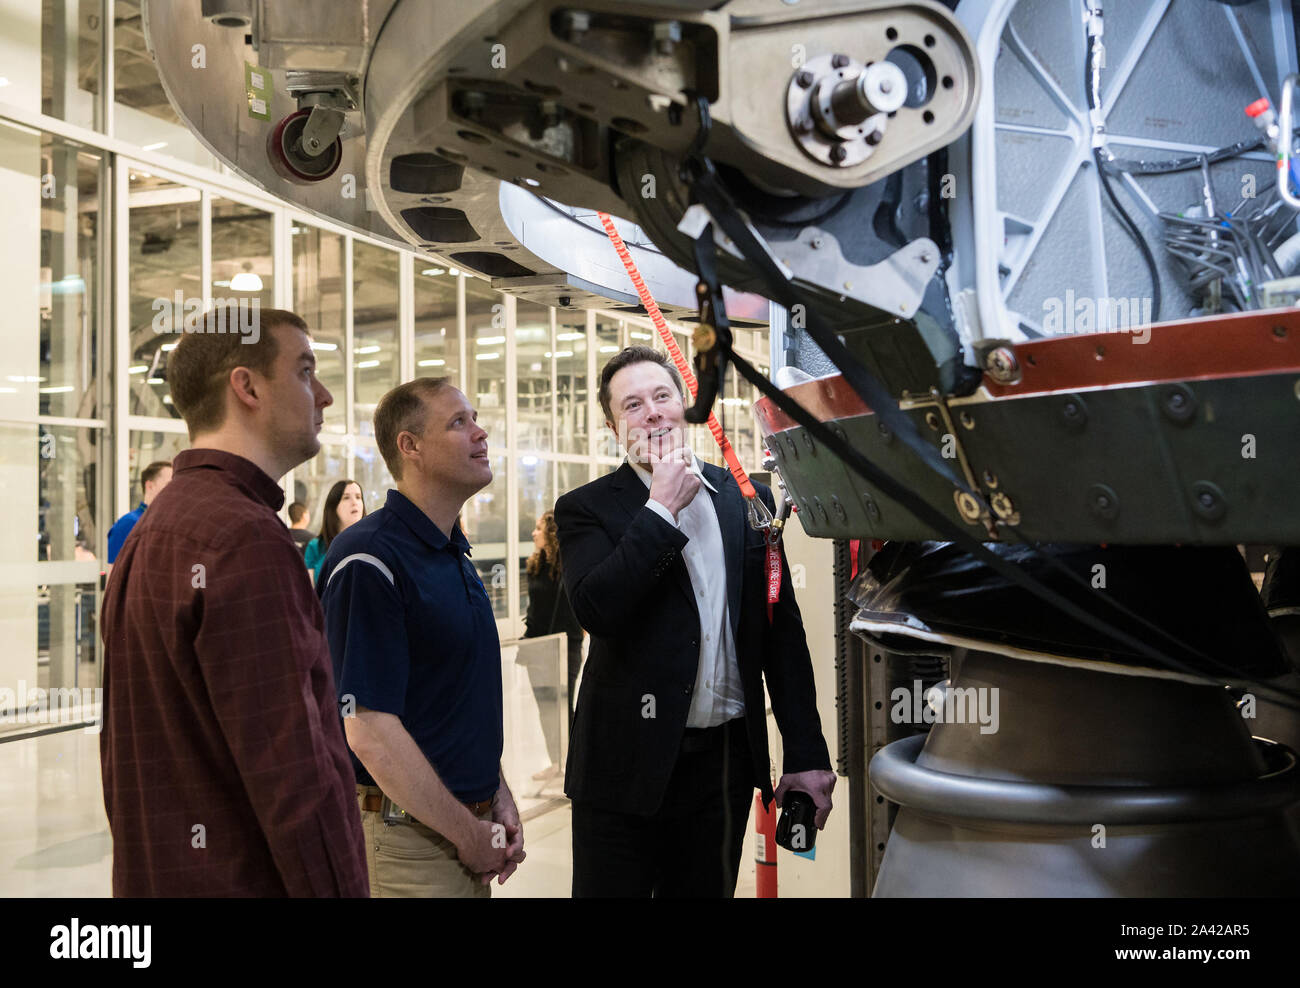 Hawthorne, United States. Oct 11, 2019. L'administrateur de la NASA Jim Bridenstine, centre, parle à SpaceX, ingénieur en chef, Elon Musk droit, tout en observant les OctaWeb, une partie de l'moteur Merlin utilisée pour le pèlerin des roquettes, au cours d'une visite de l'SpaceX Siège le 10 octobre 2019, dans la région de Hawthorne, CA. Photo de la NASA par Aubrey Gemignani/UPI UPI : Crédit/Alamy Live News Banque D'Images